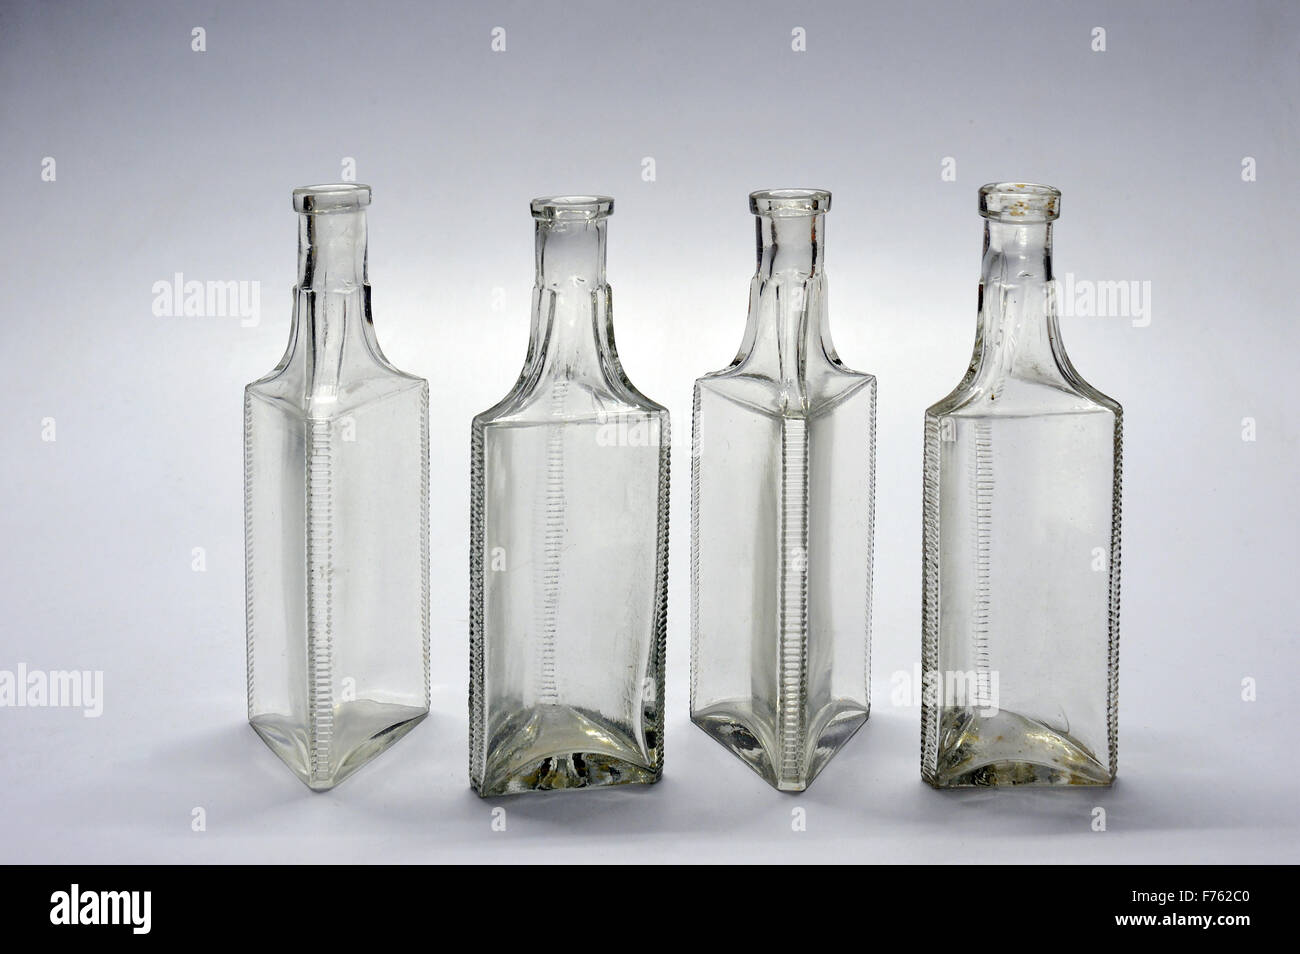 glass bottles, old bottles, antique bottles, vintage bottles, medicine bottles Stock Photo